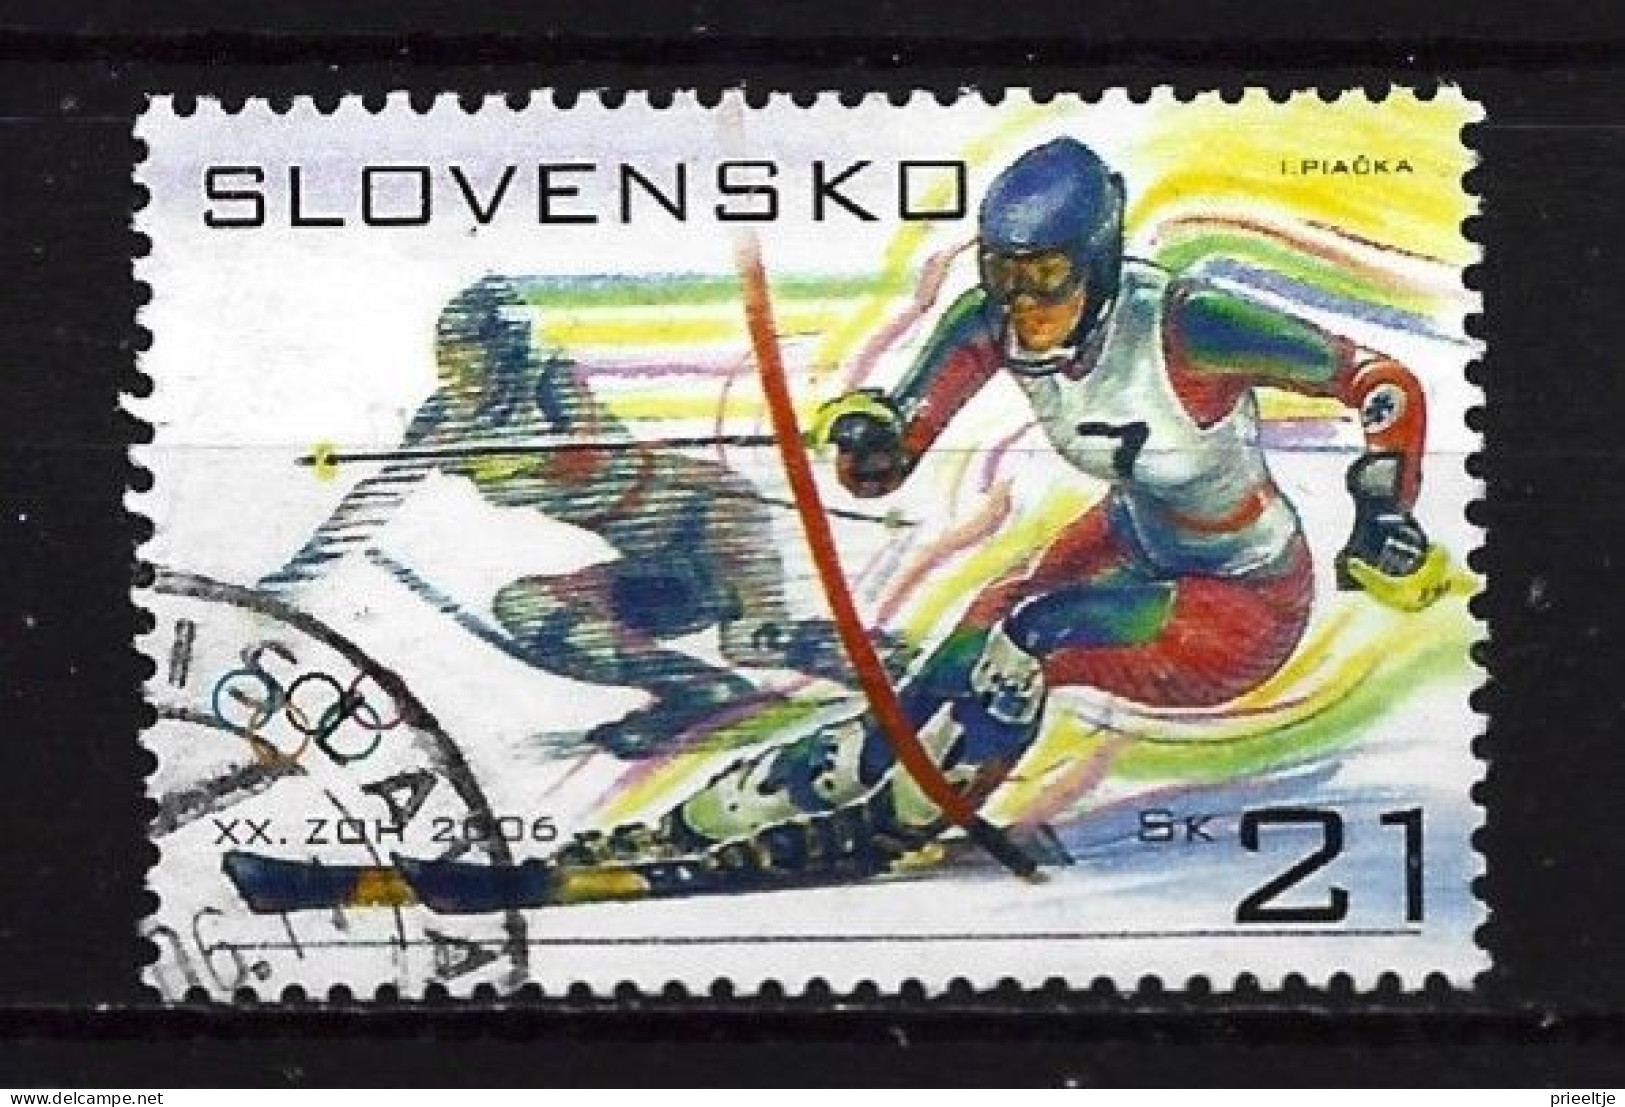 Slovensko 2006 Ol. Games Y.T. 458 (0) - Usados